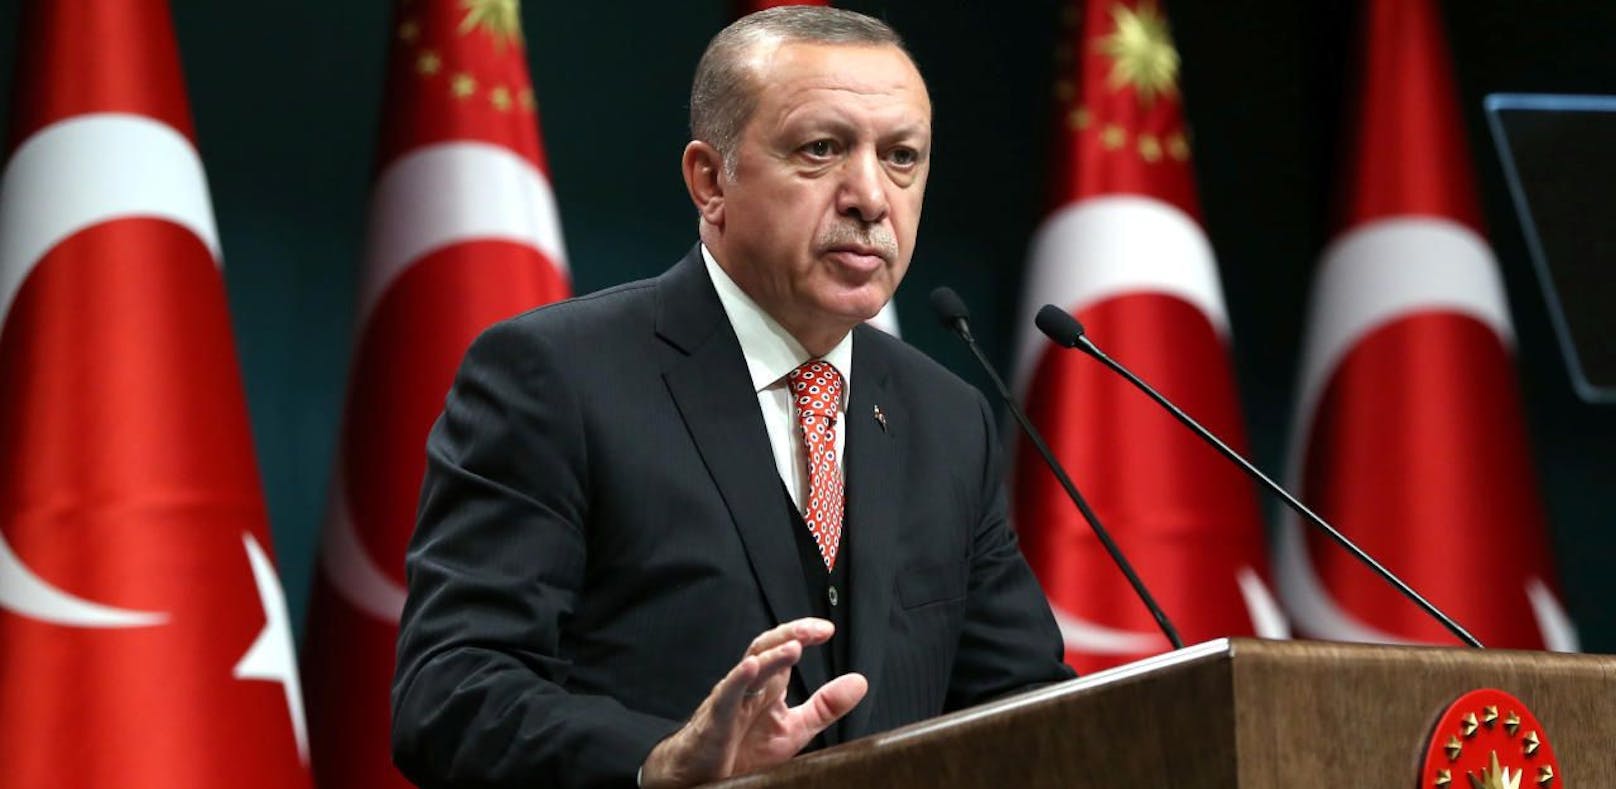 Recep Tayyip Erdogan wollte rund um den G20-Gipfel vor seinen Anhängern in Deutschland auftreten.